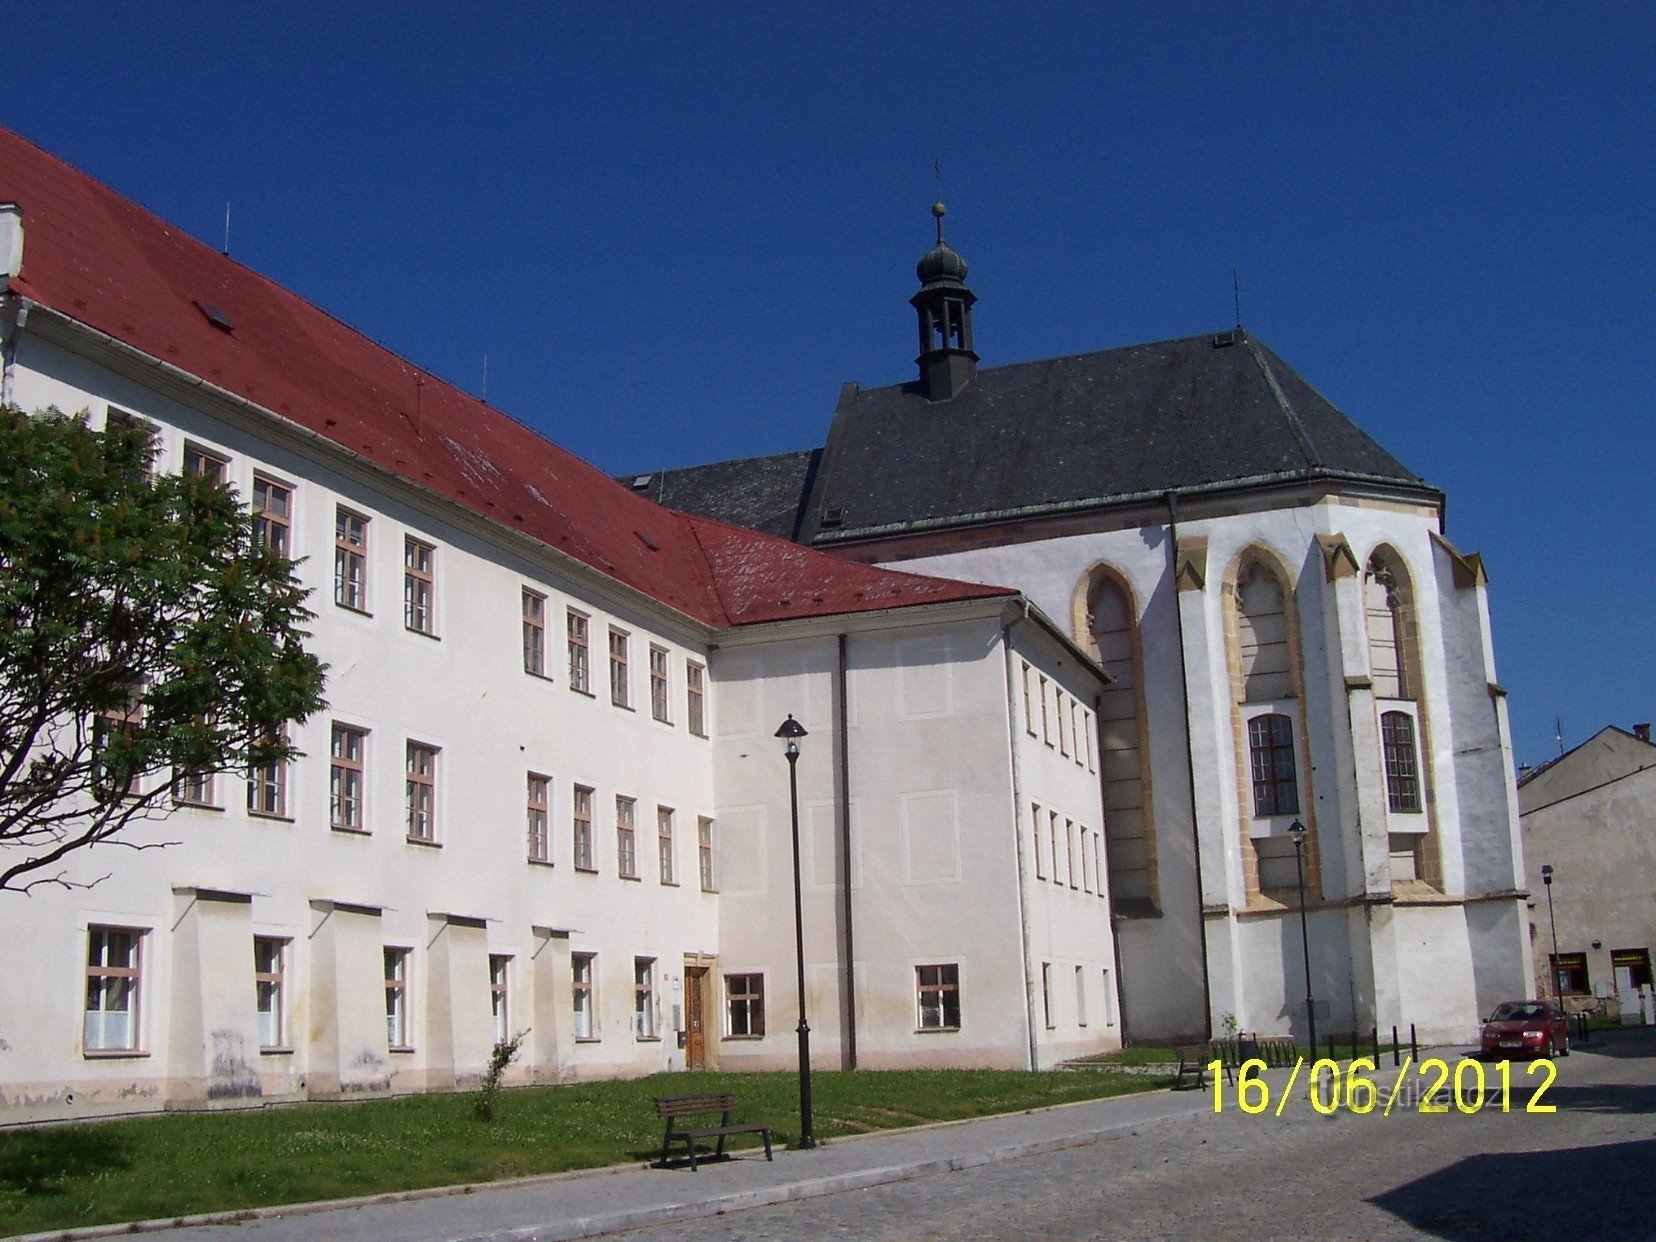 fotografie a bisericii cu sacristie din strada Olomoucká